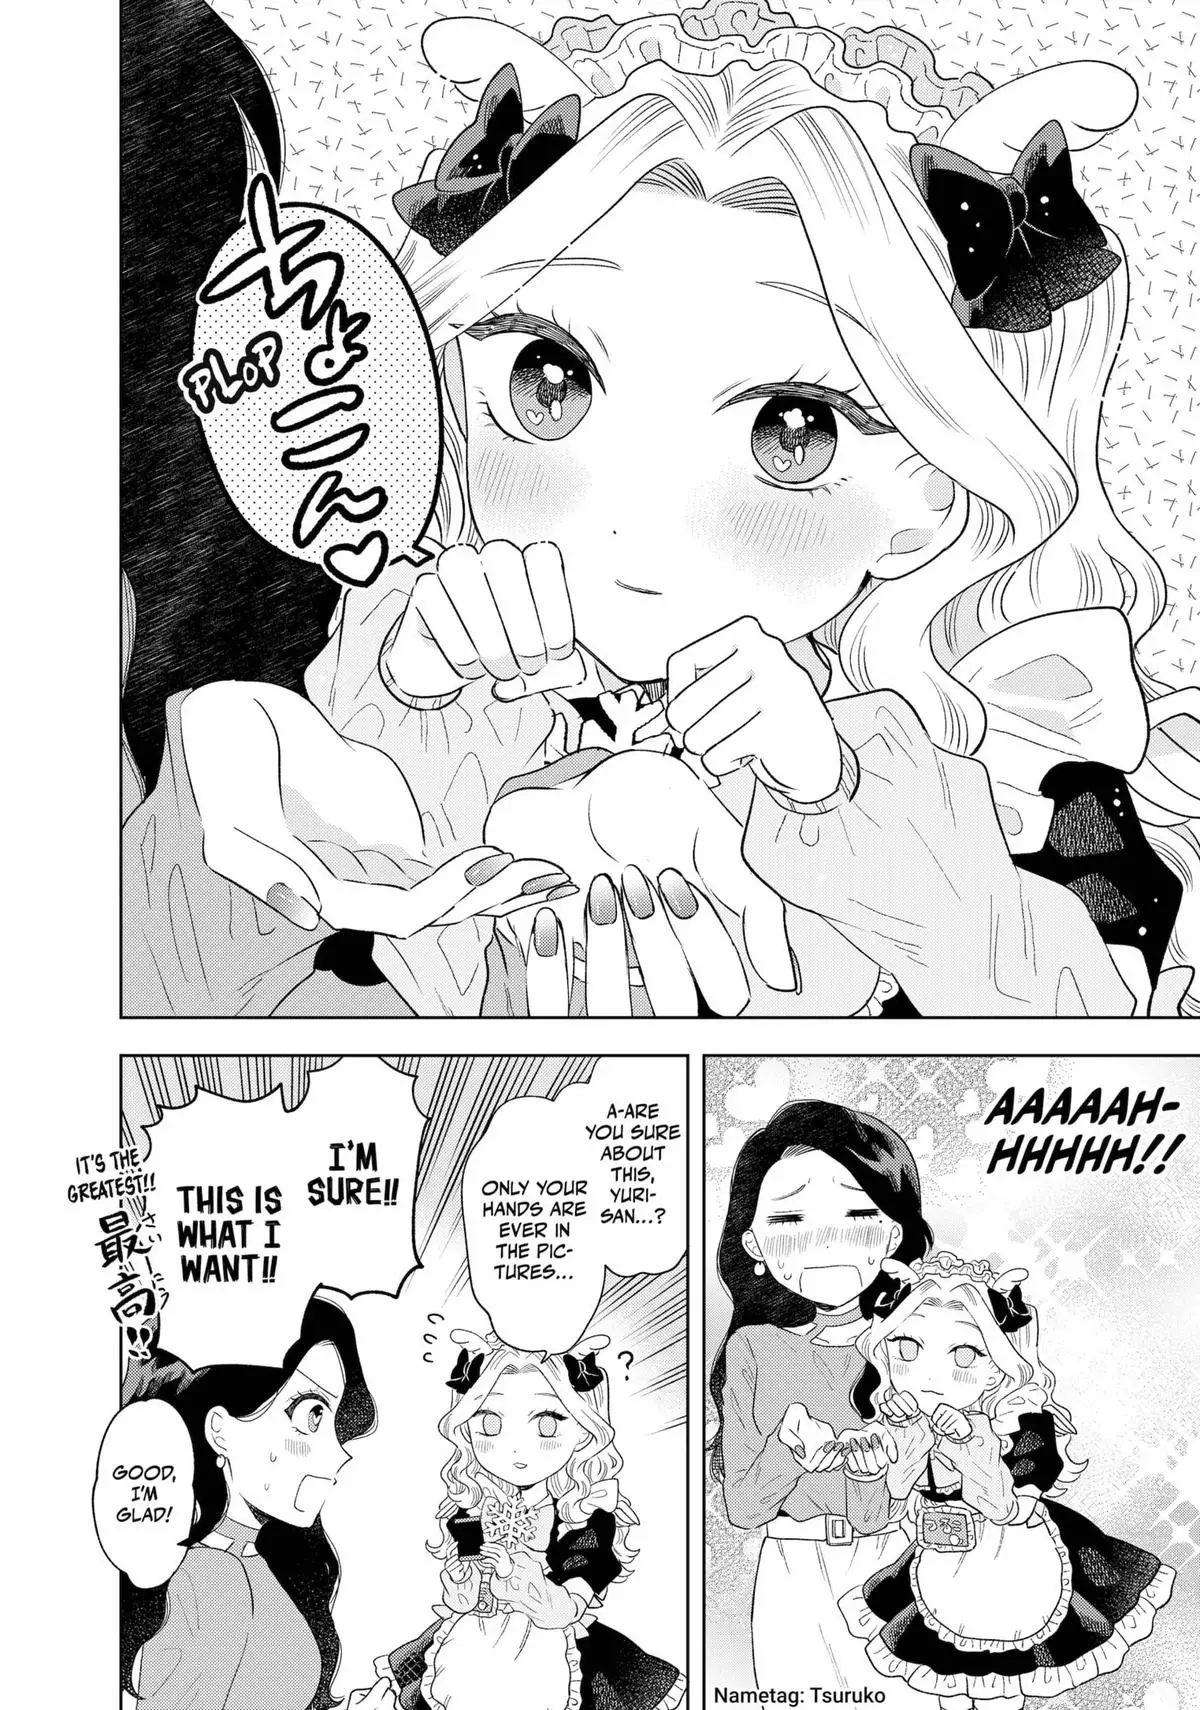 Tsuruko Returns The Favor - 10 page 8-e3e116f8